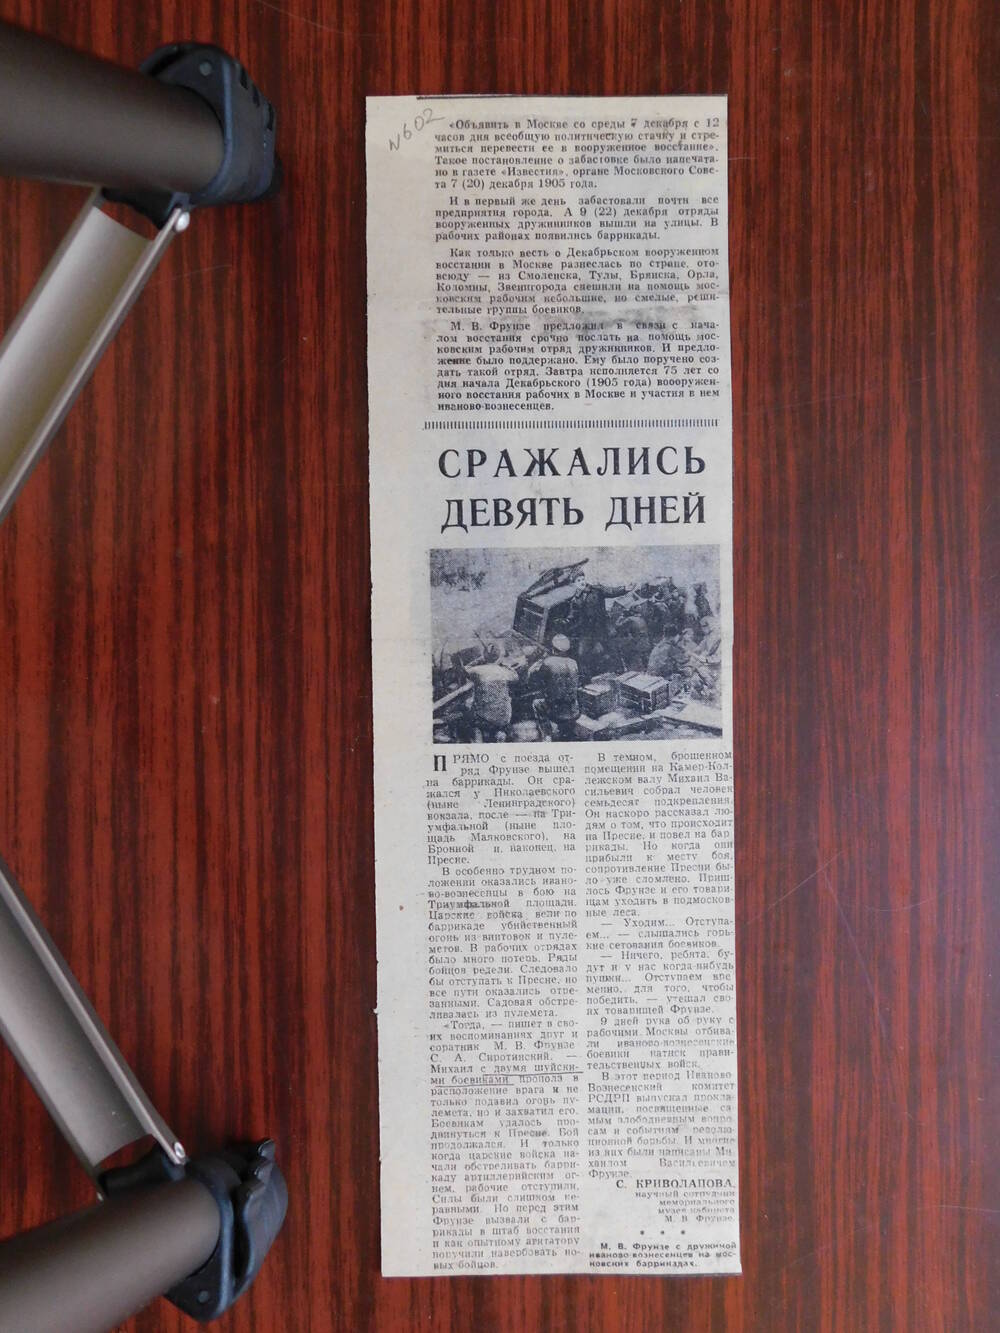 Фрагмент газеты Ленинец от 21.12.1980 г. Ст. С. Криволапова. Сражались девять дней. Иваново.